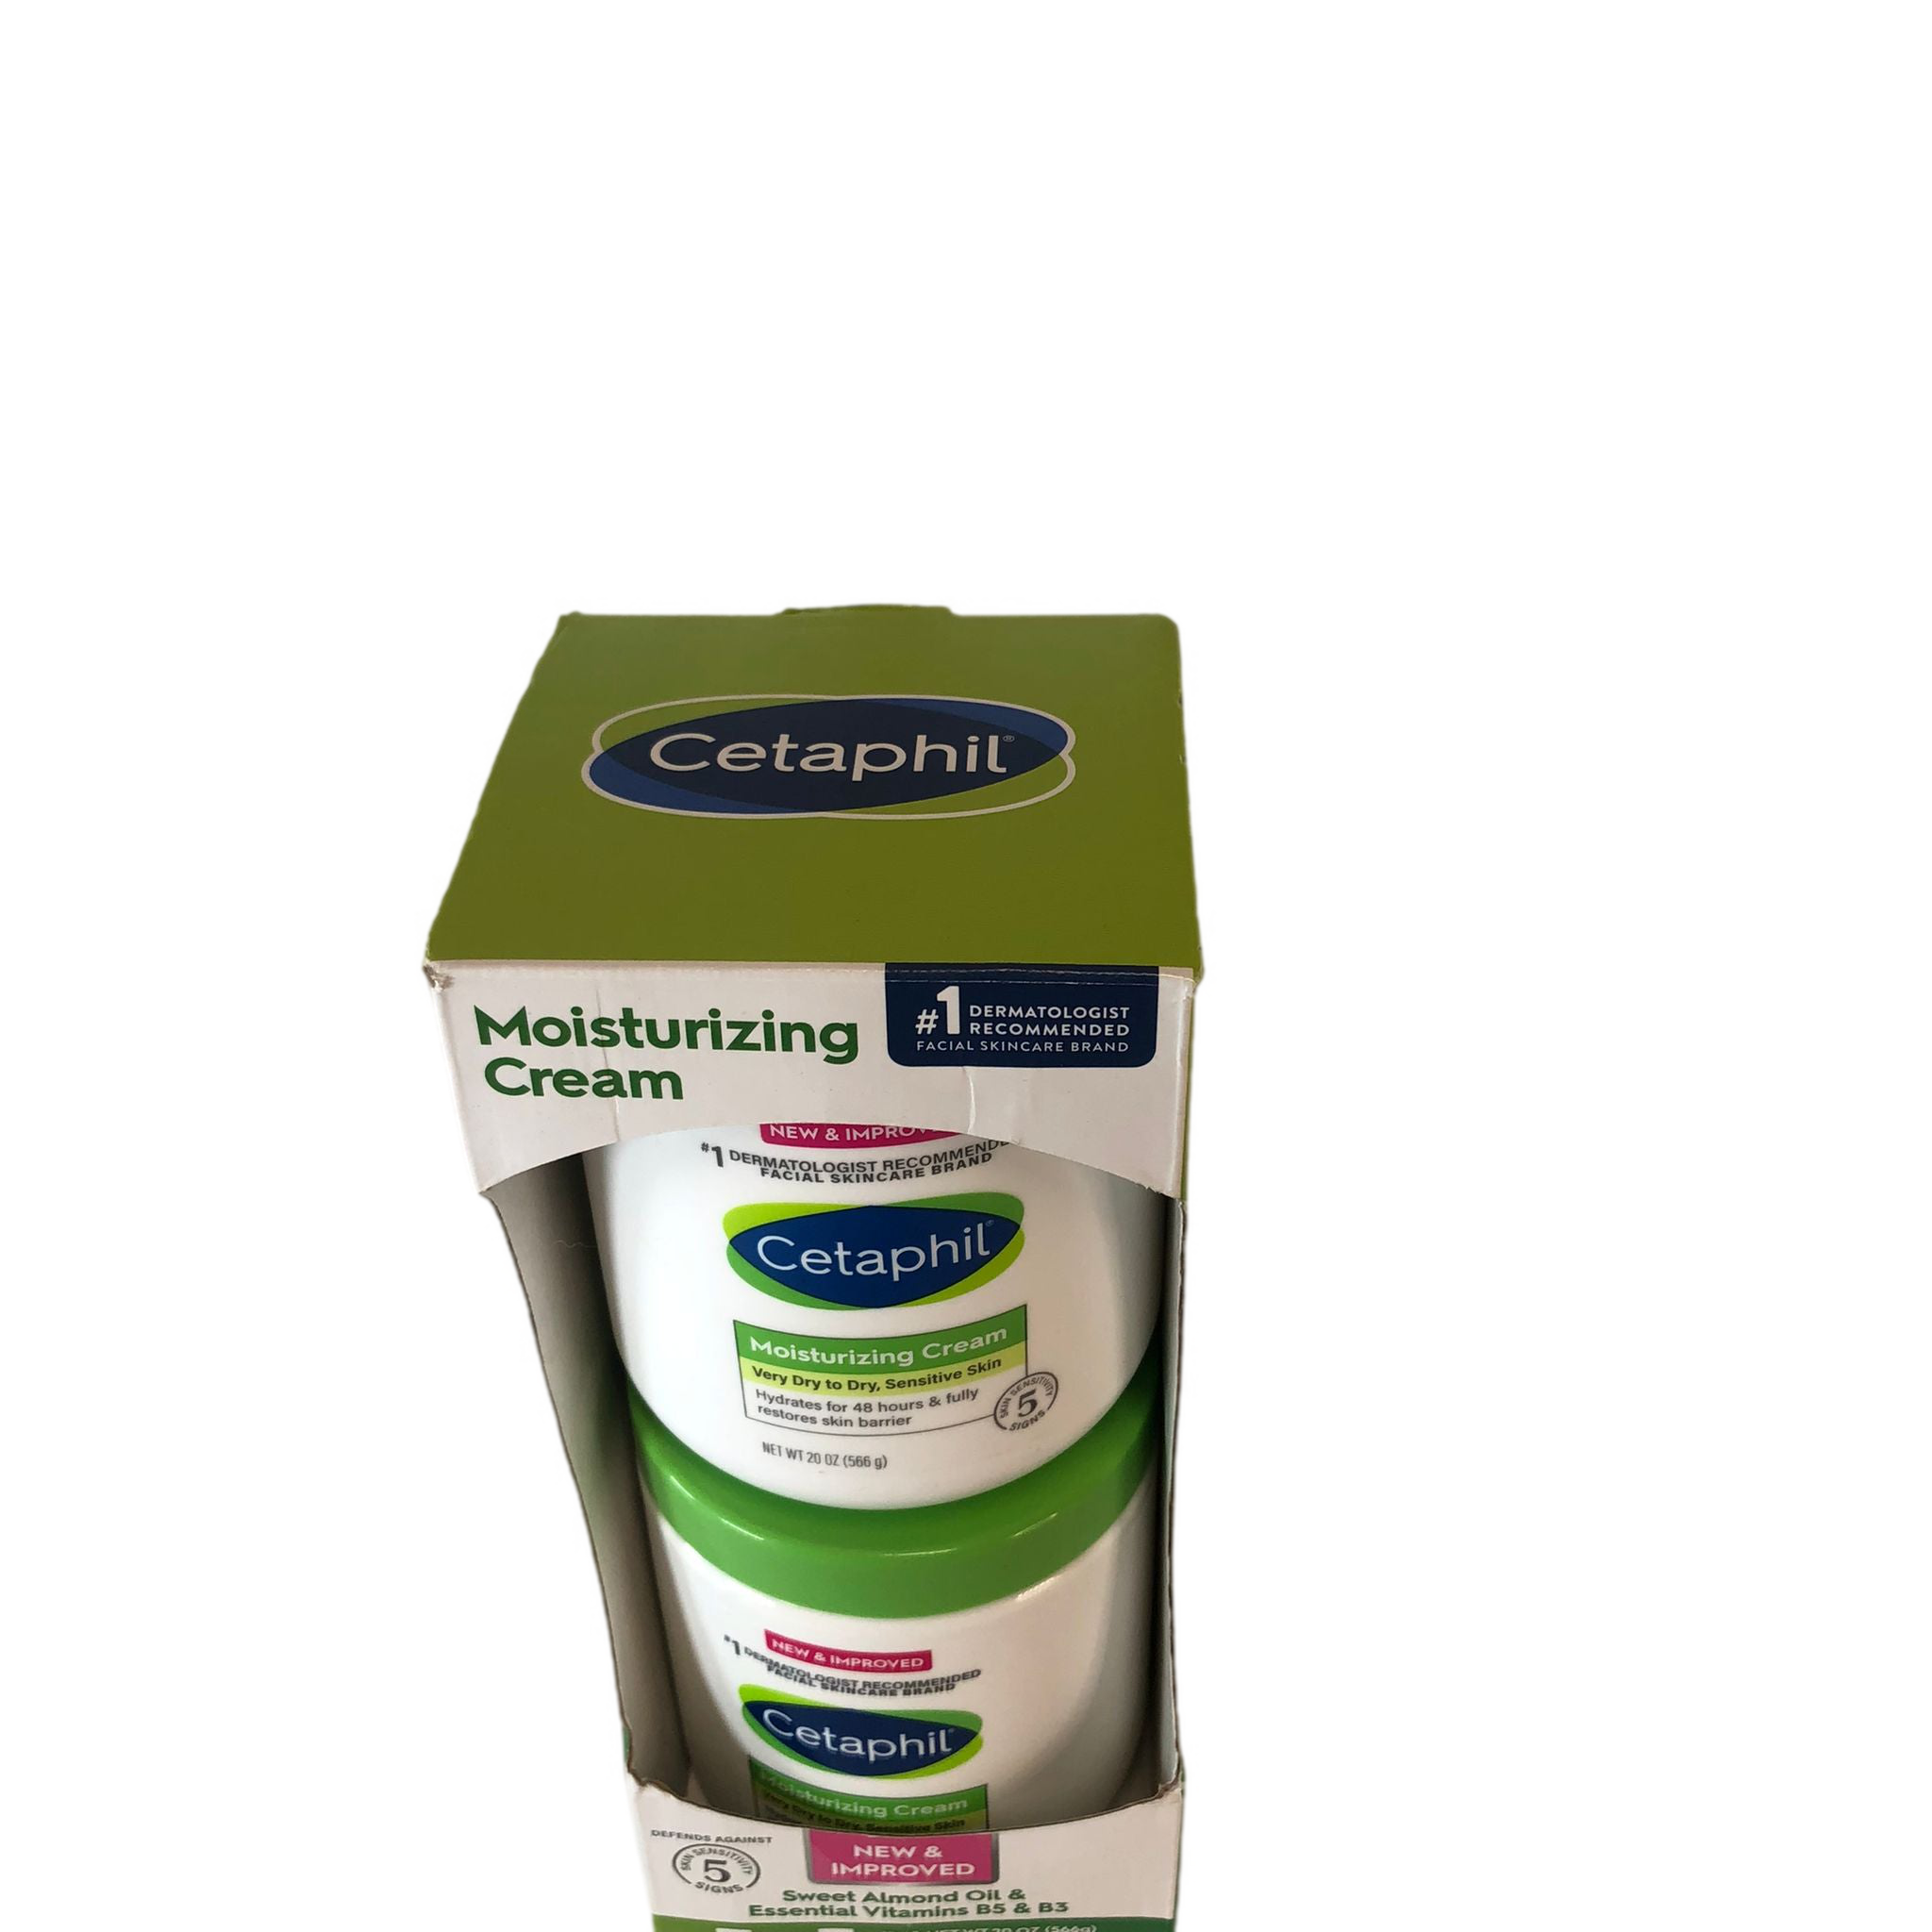 Cetaphil Moisturizing Cream 20 oz, 2 count